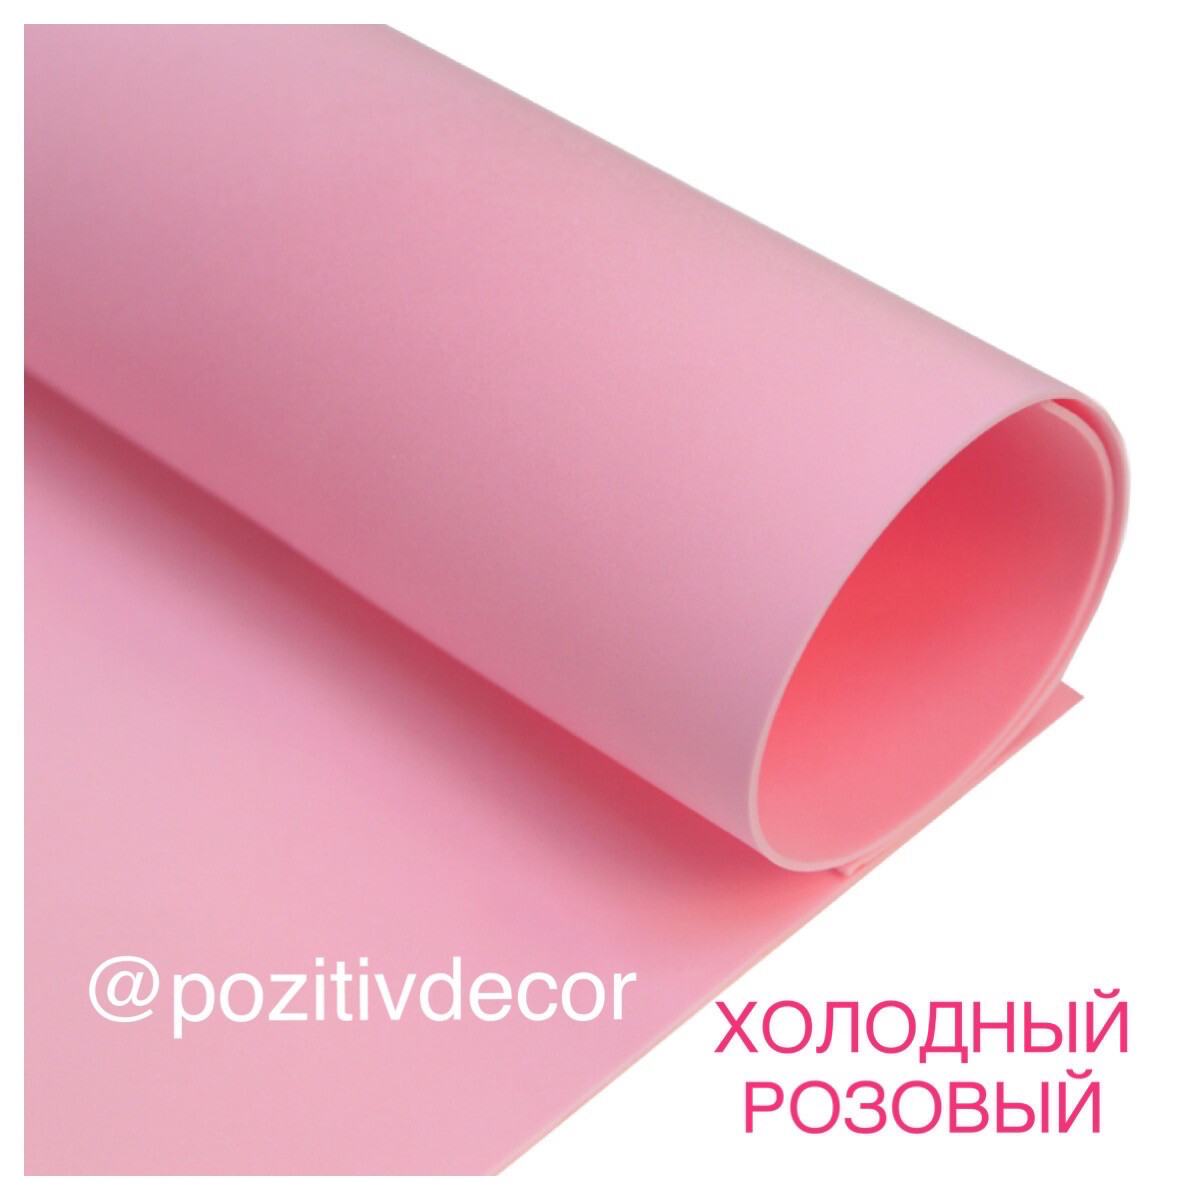 ЗЕФИРНЫЙ ФОАМИРАН, лист 50/50 см, холодный розовый, толщина 2 мм